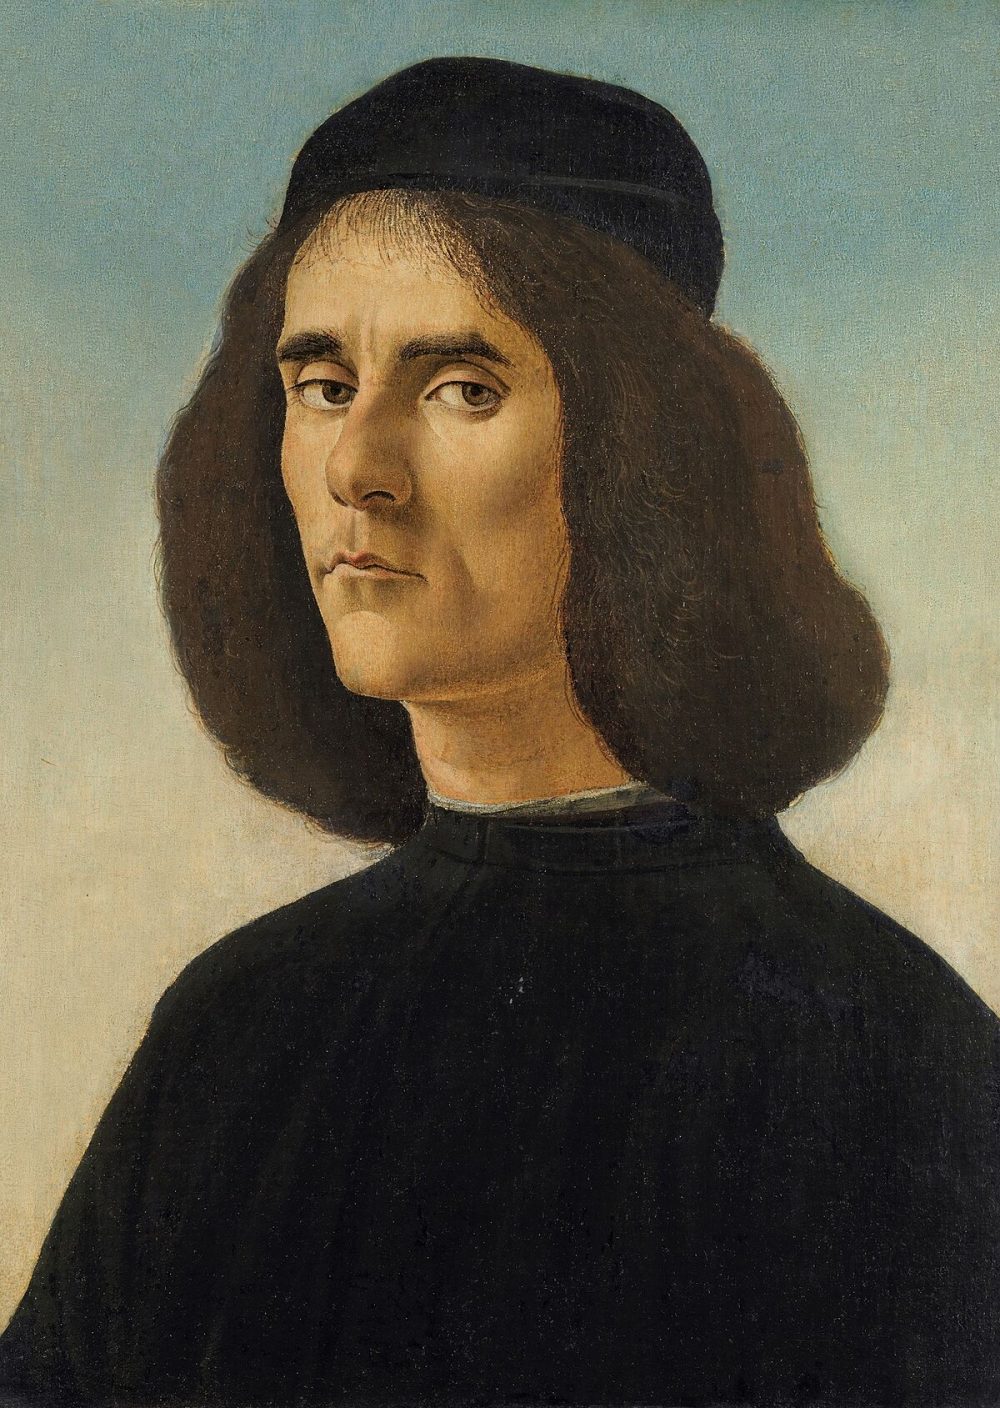 El Museu de Belles Arts de València exhibirà el retrat que Sandro Botticelli va pintar de Michele Marullo Tarcaniota